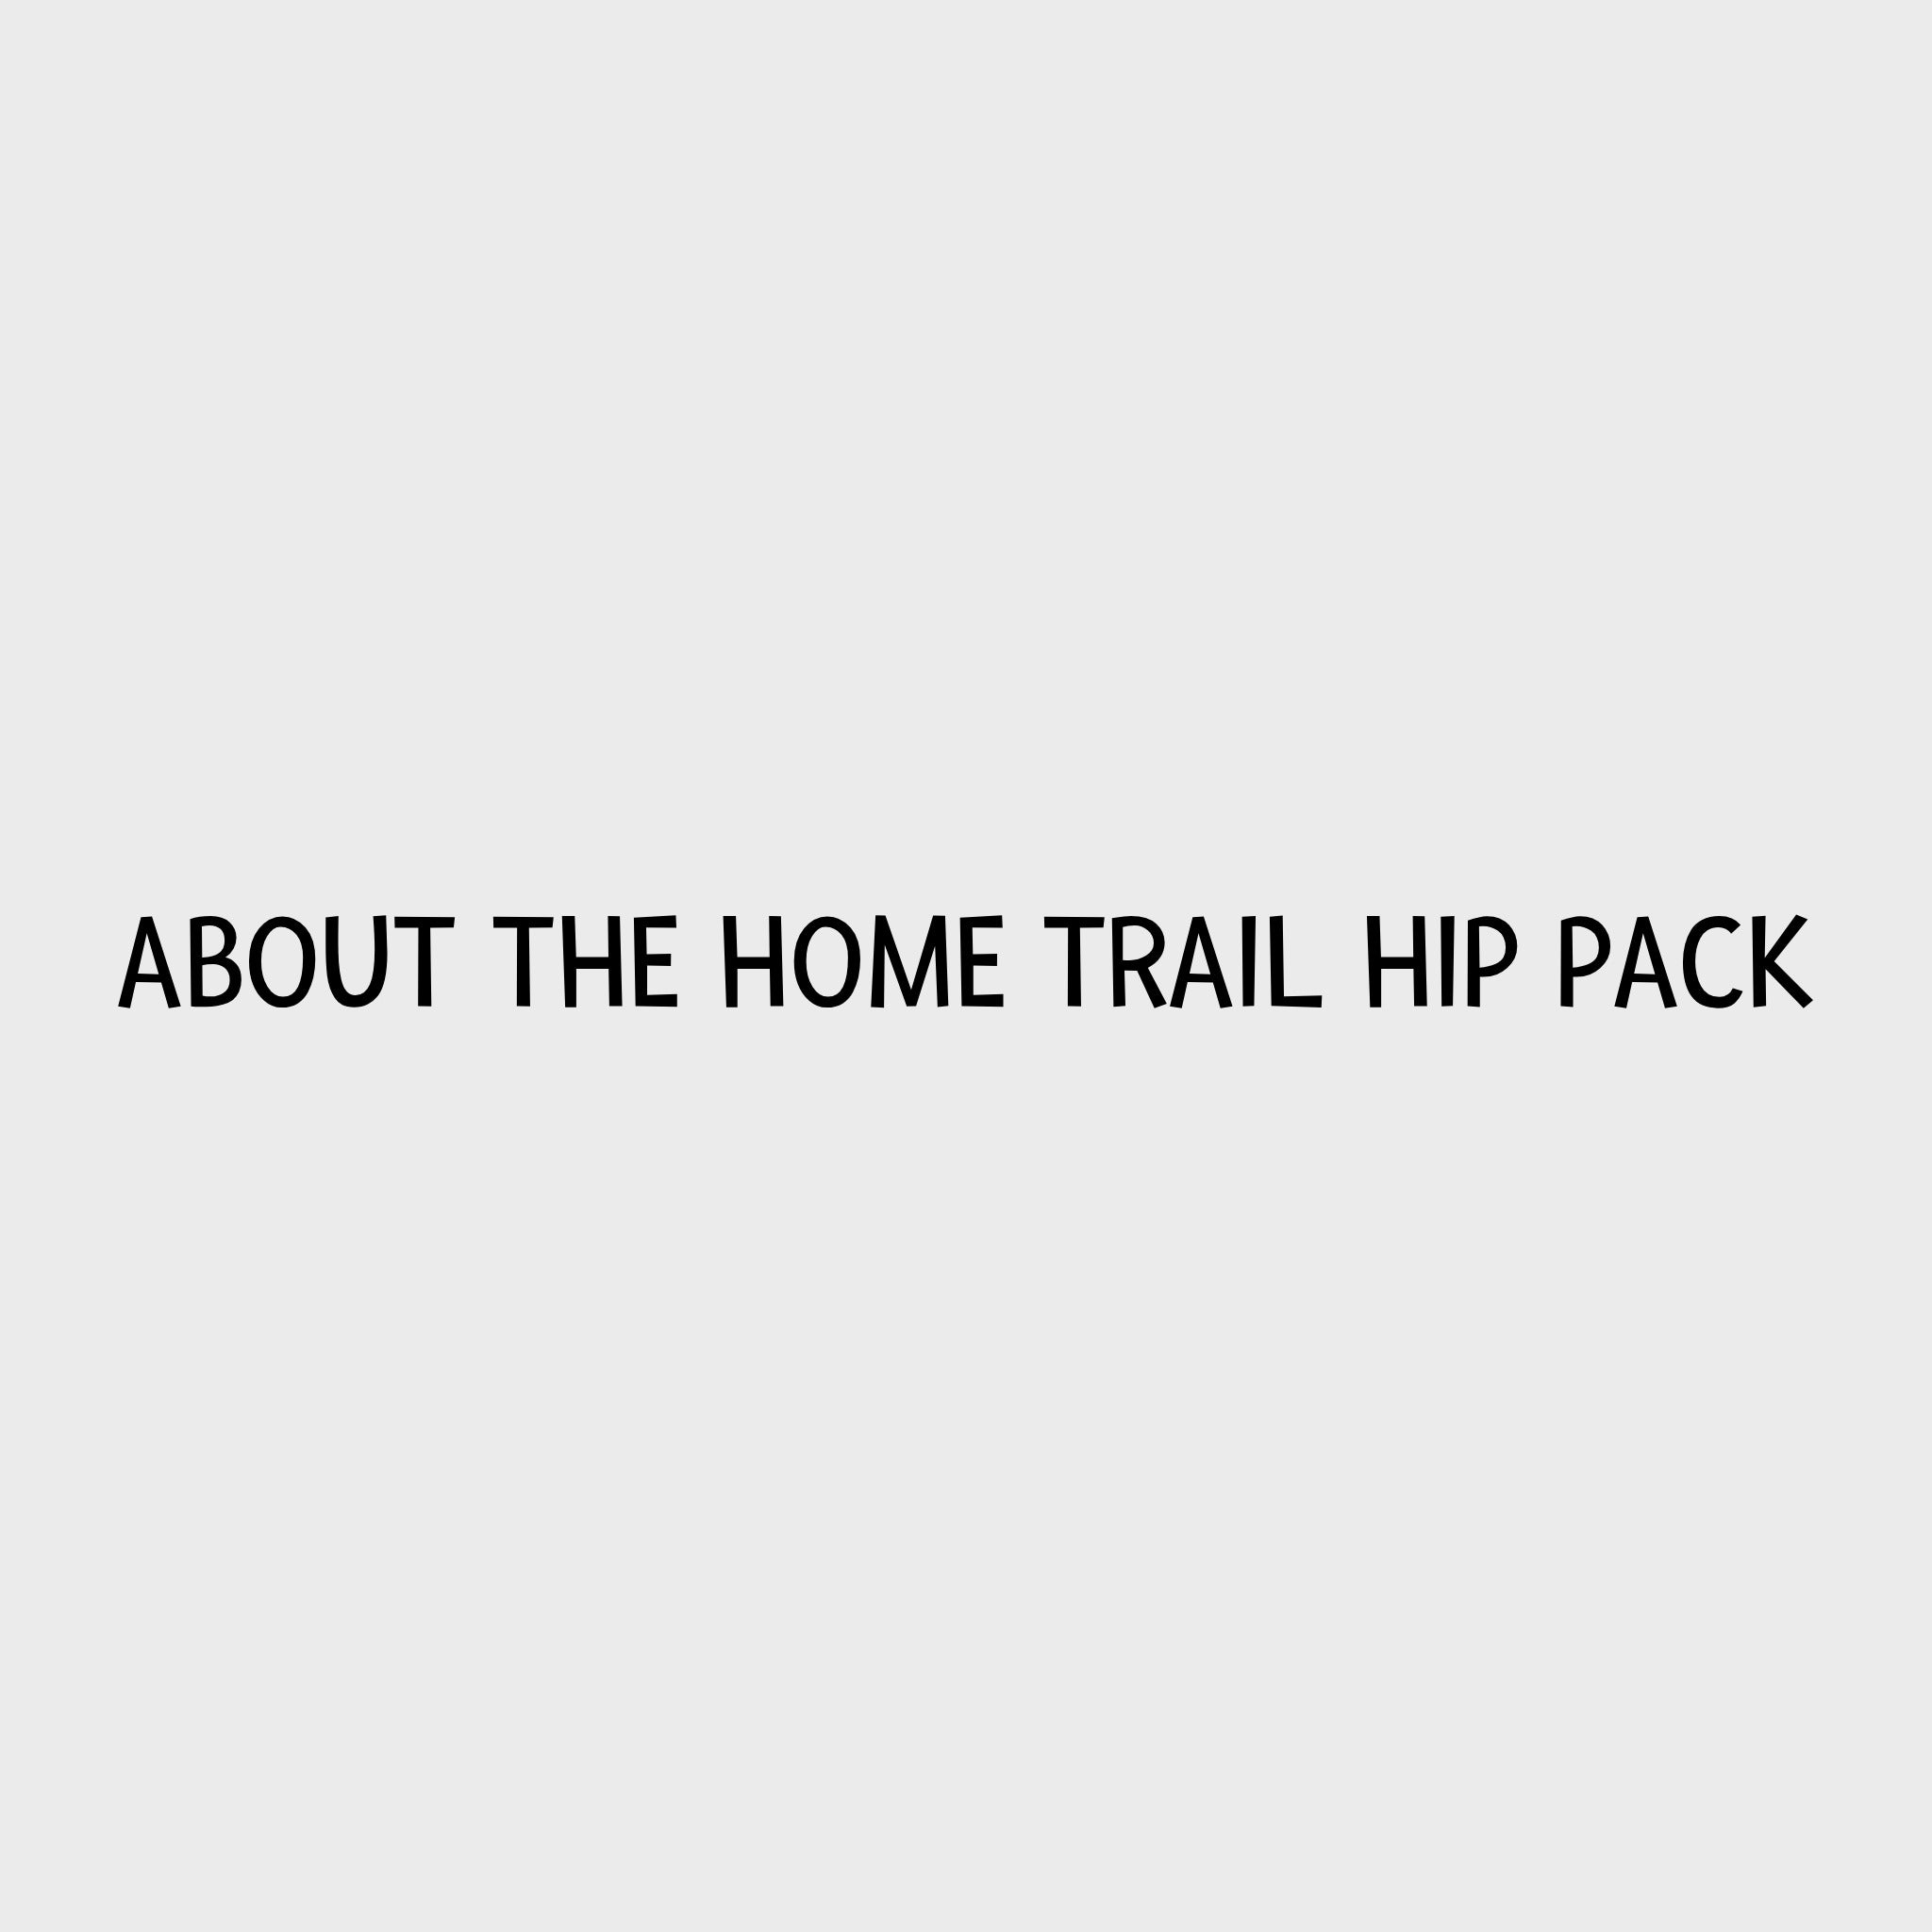 Video - Ruffwear Home Trail Hip Pack